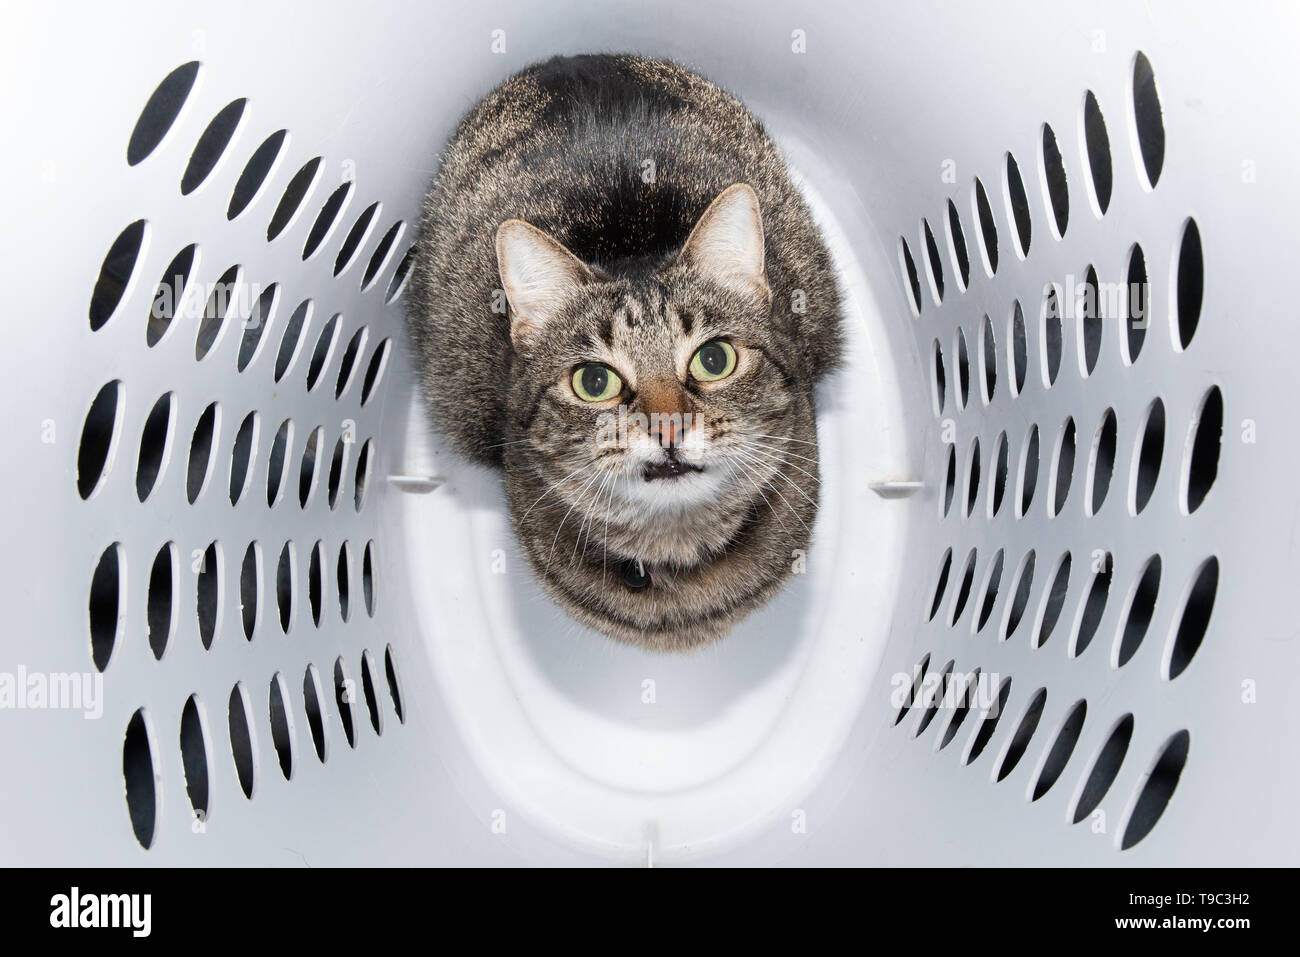 Imagen cómica de un gato atigrado marrón sentado en una lavandería, mirando hacia arriba Foto de stock